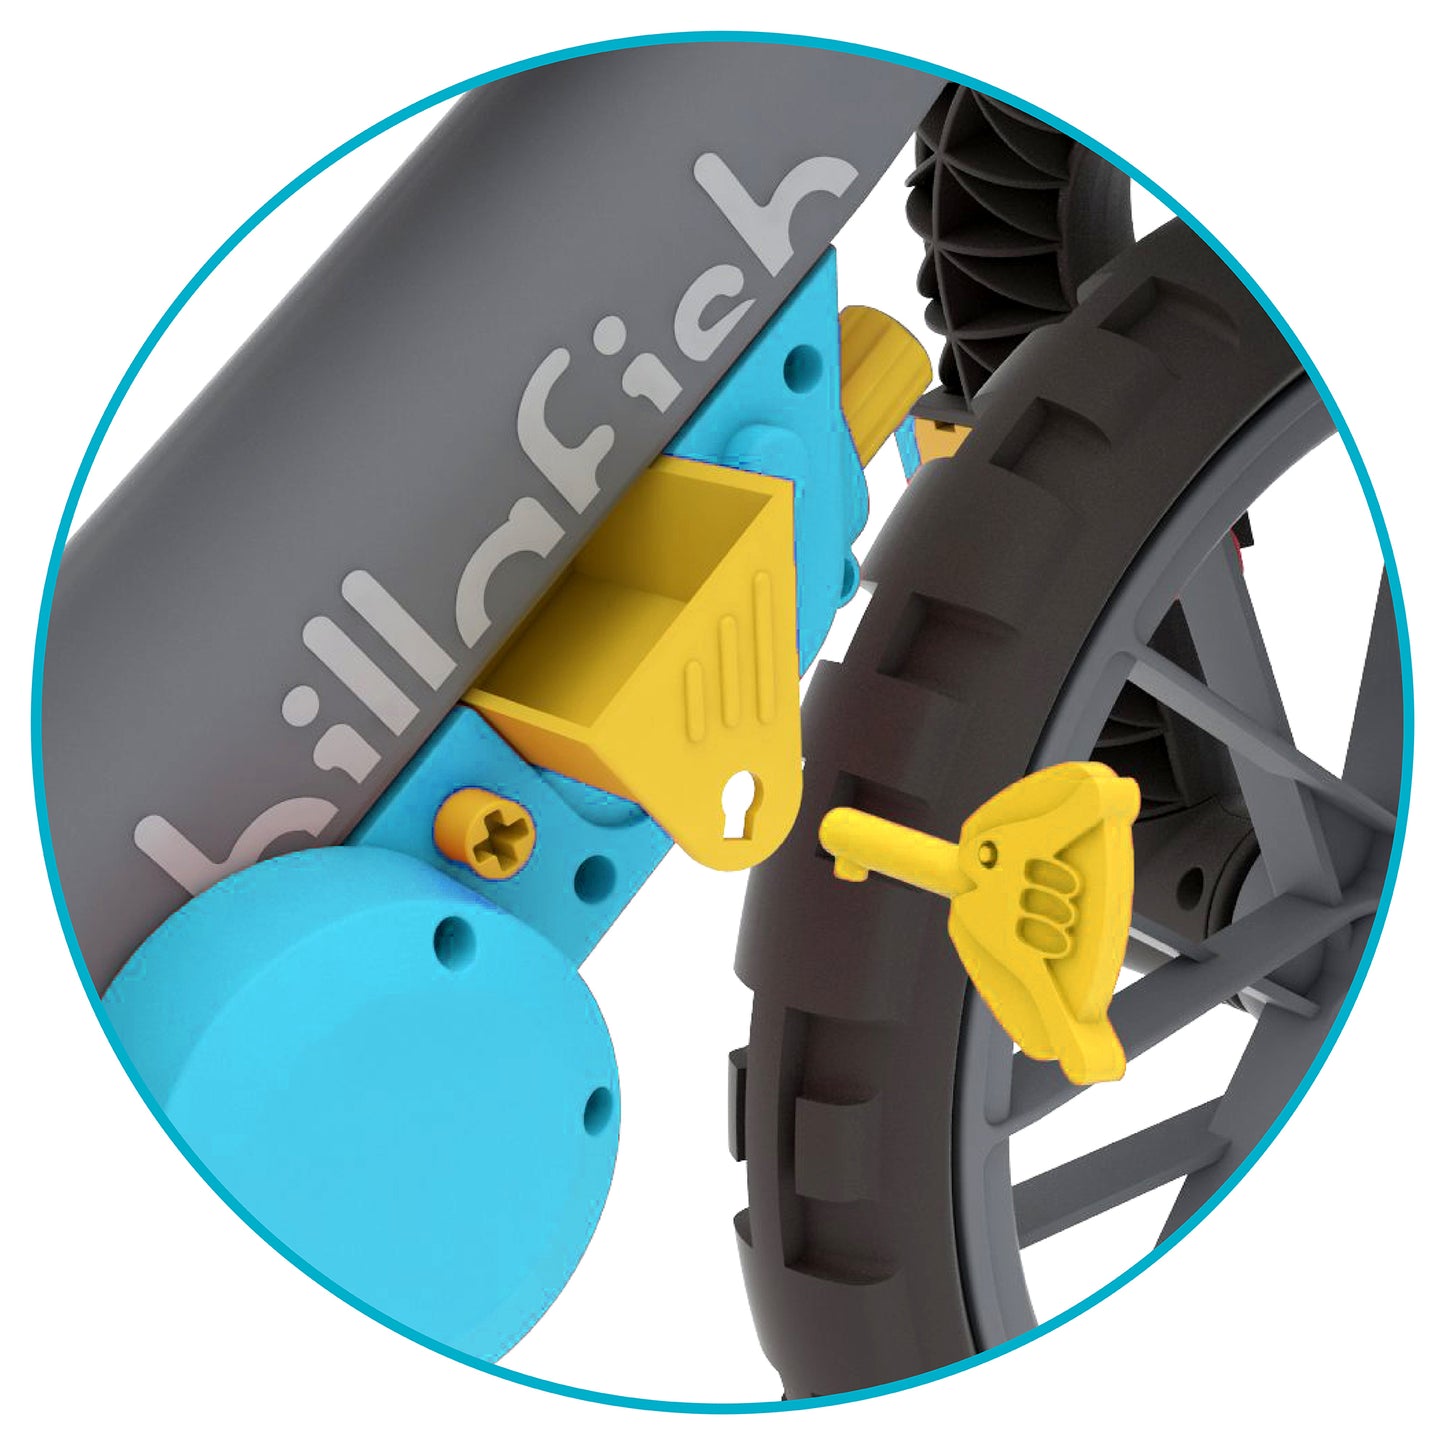 Chillafish BMXie MOTO Multi-Play-Laufrad mit echten VROOM VROOM-Sounds und abnehmbarem Spielmotor, inklusive kindersicherem Schraubenzieher und Schrauben, verstellbarem Sitz, für 2-5 Jahre.